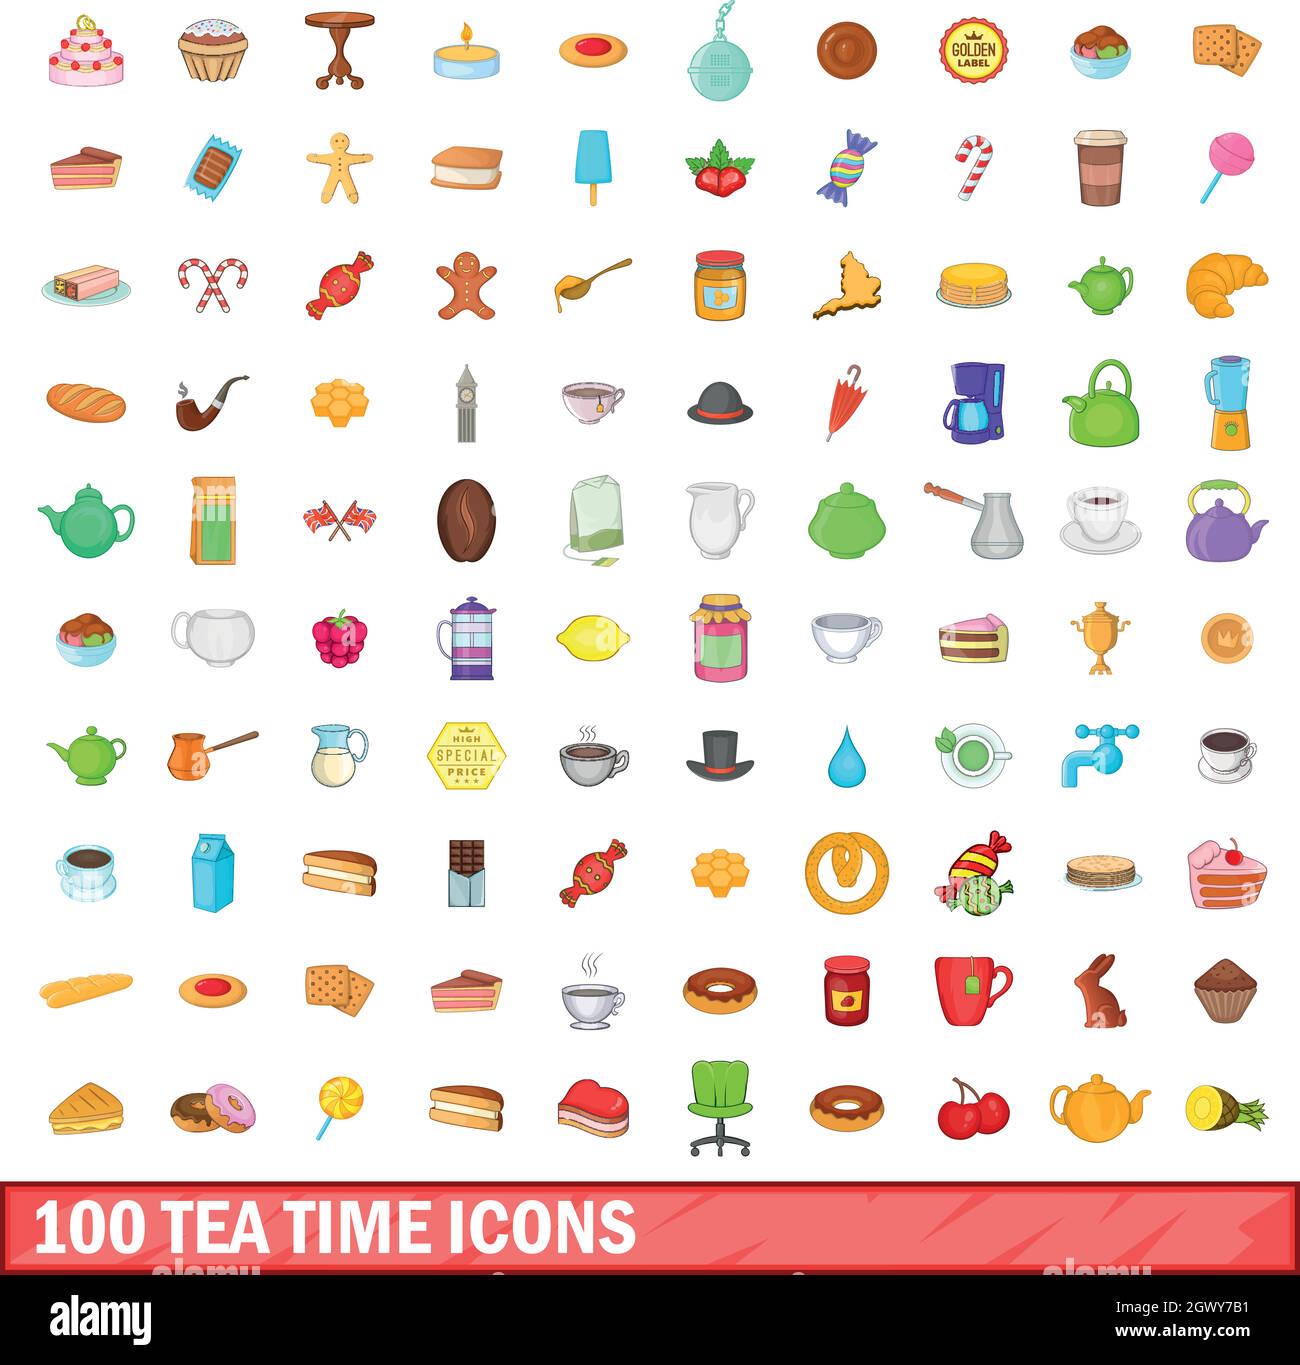 100 l'heure du thé, cartoon style icons set Illustration de Vecteur